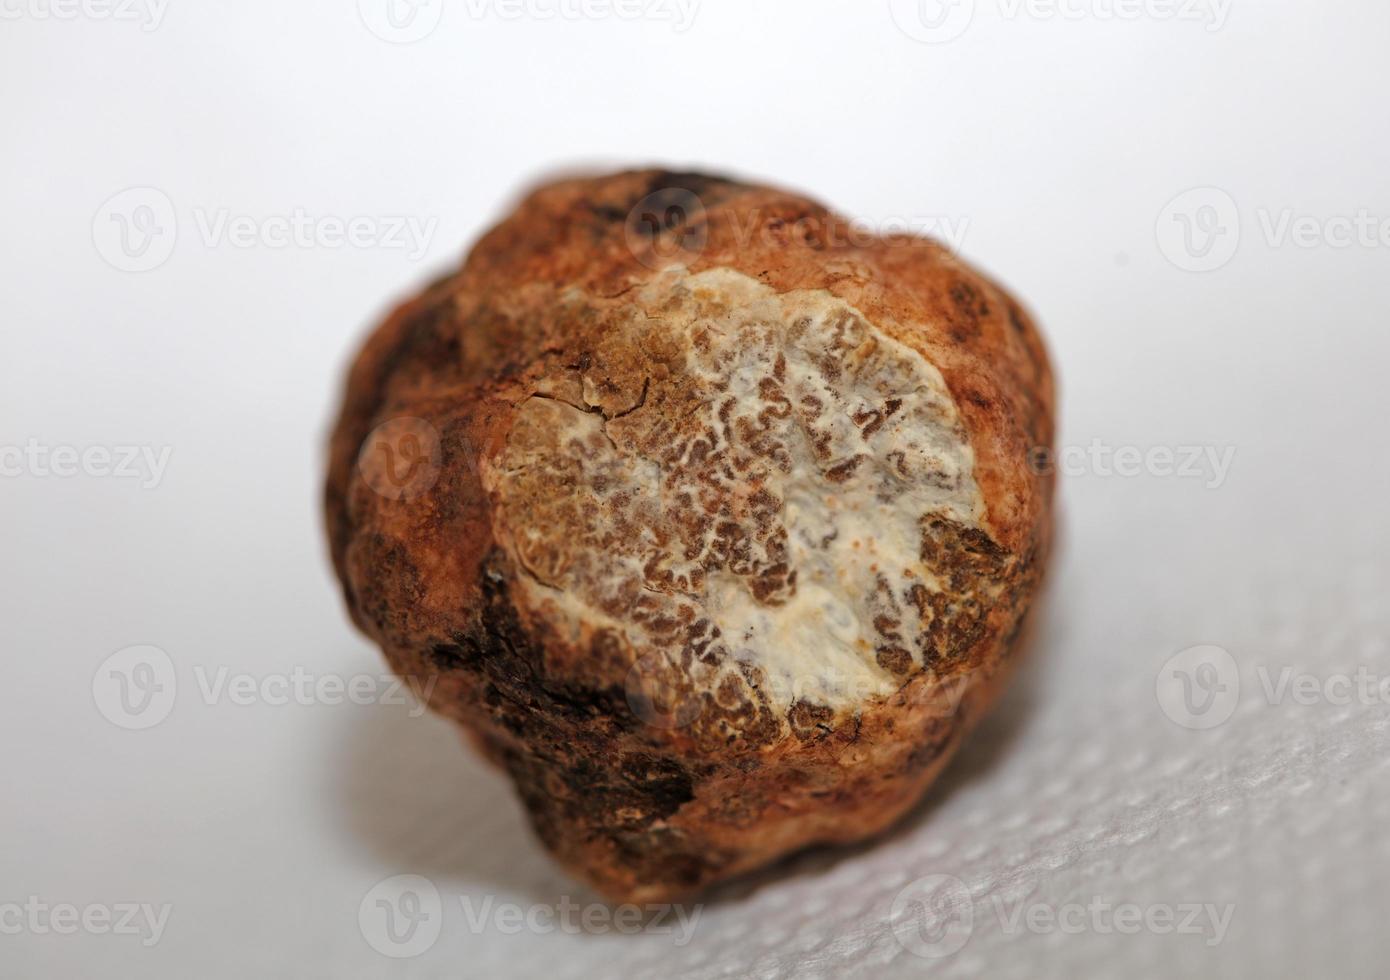 Weiß Trüffel Pilz schließen oben Hintergrund botanisch druckt Knolle magnatum Familie tuberaceae groß Größe hoch Qualität Bild foto